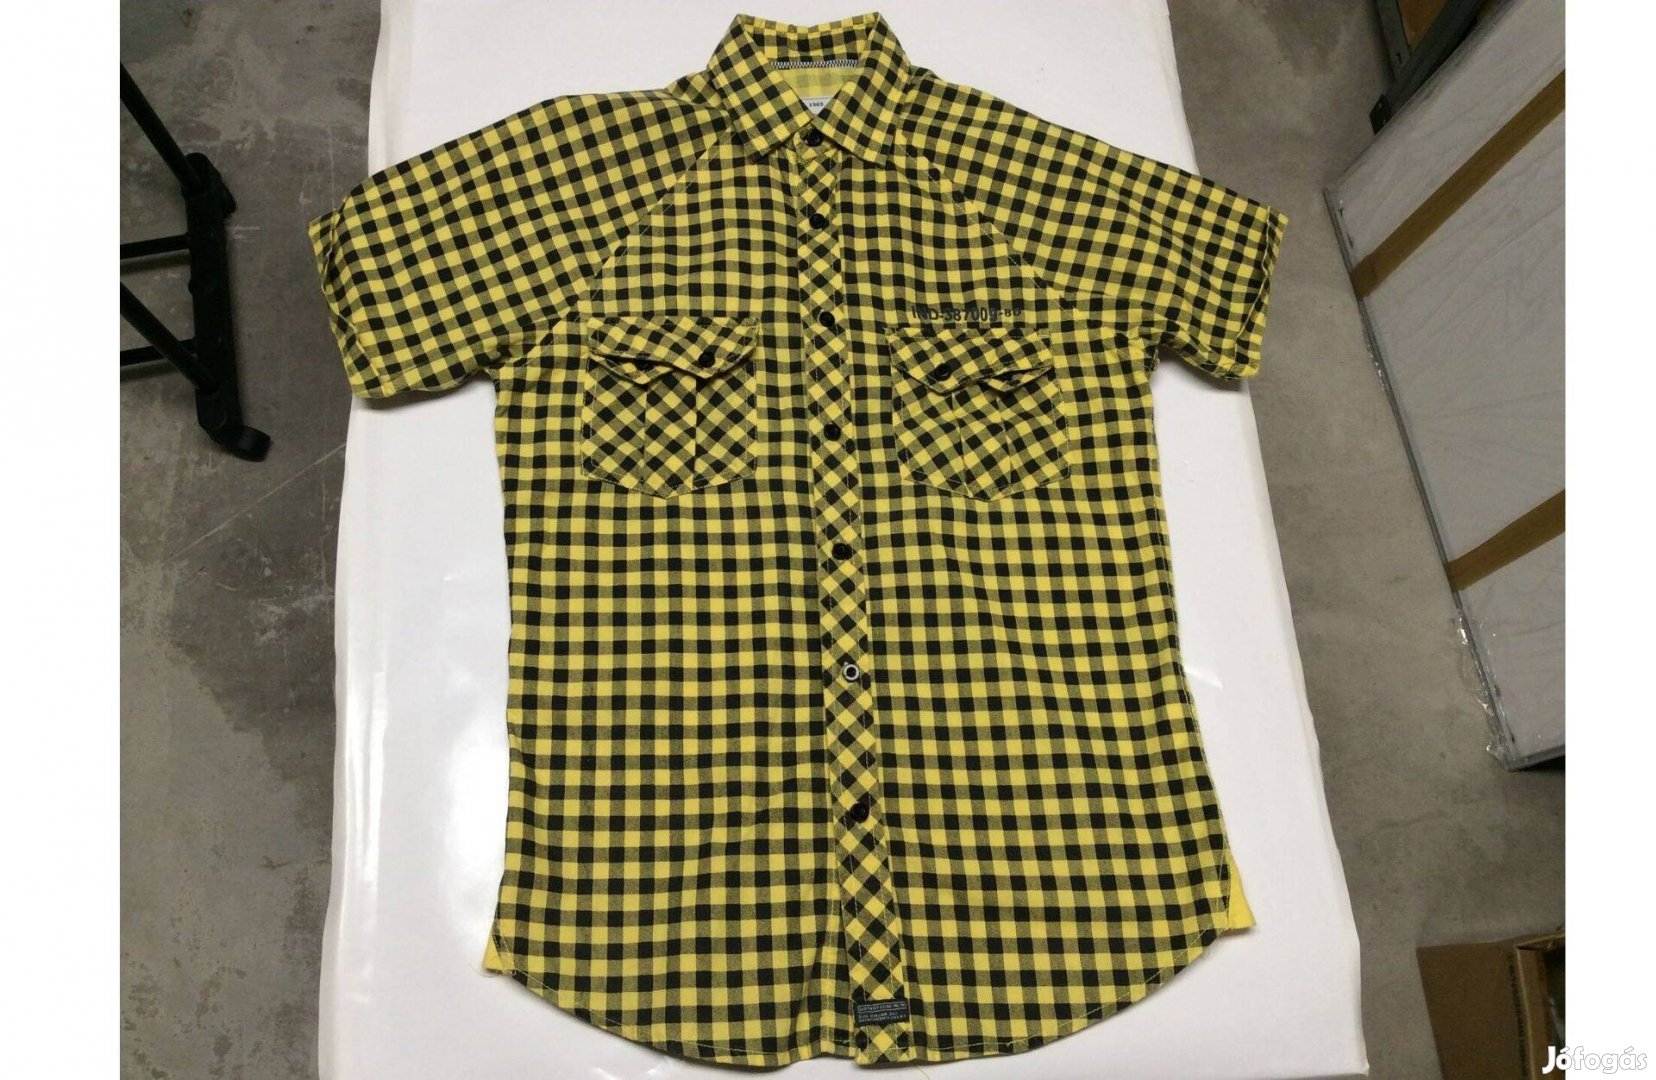 XS-es X-Small fiú ing rövid ujjú ing jó anyagú sárga fekete kockás ing